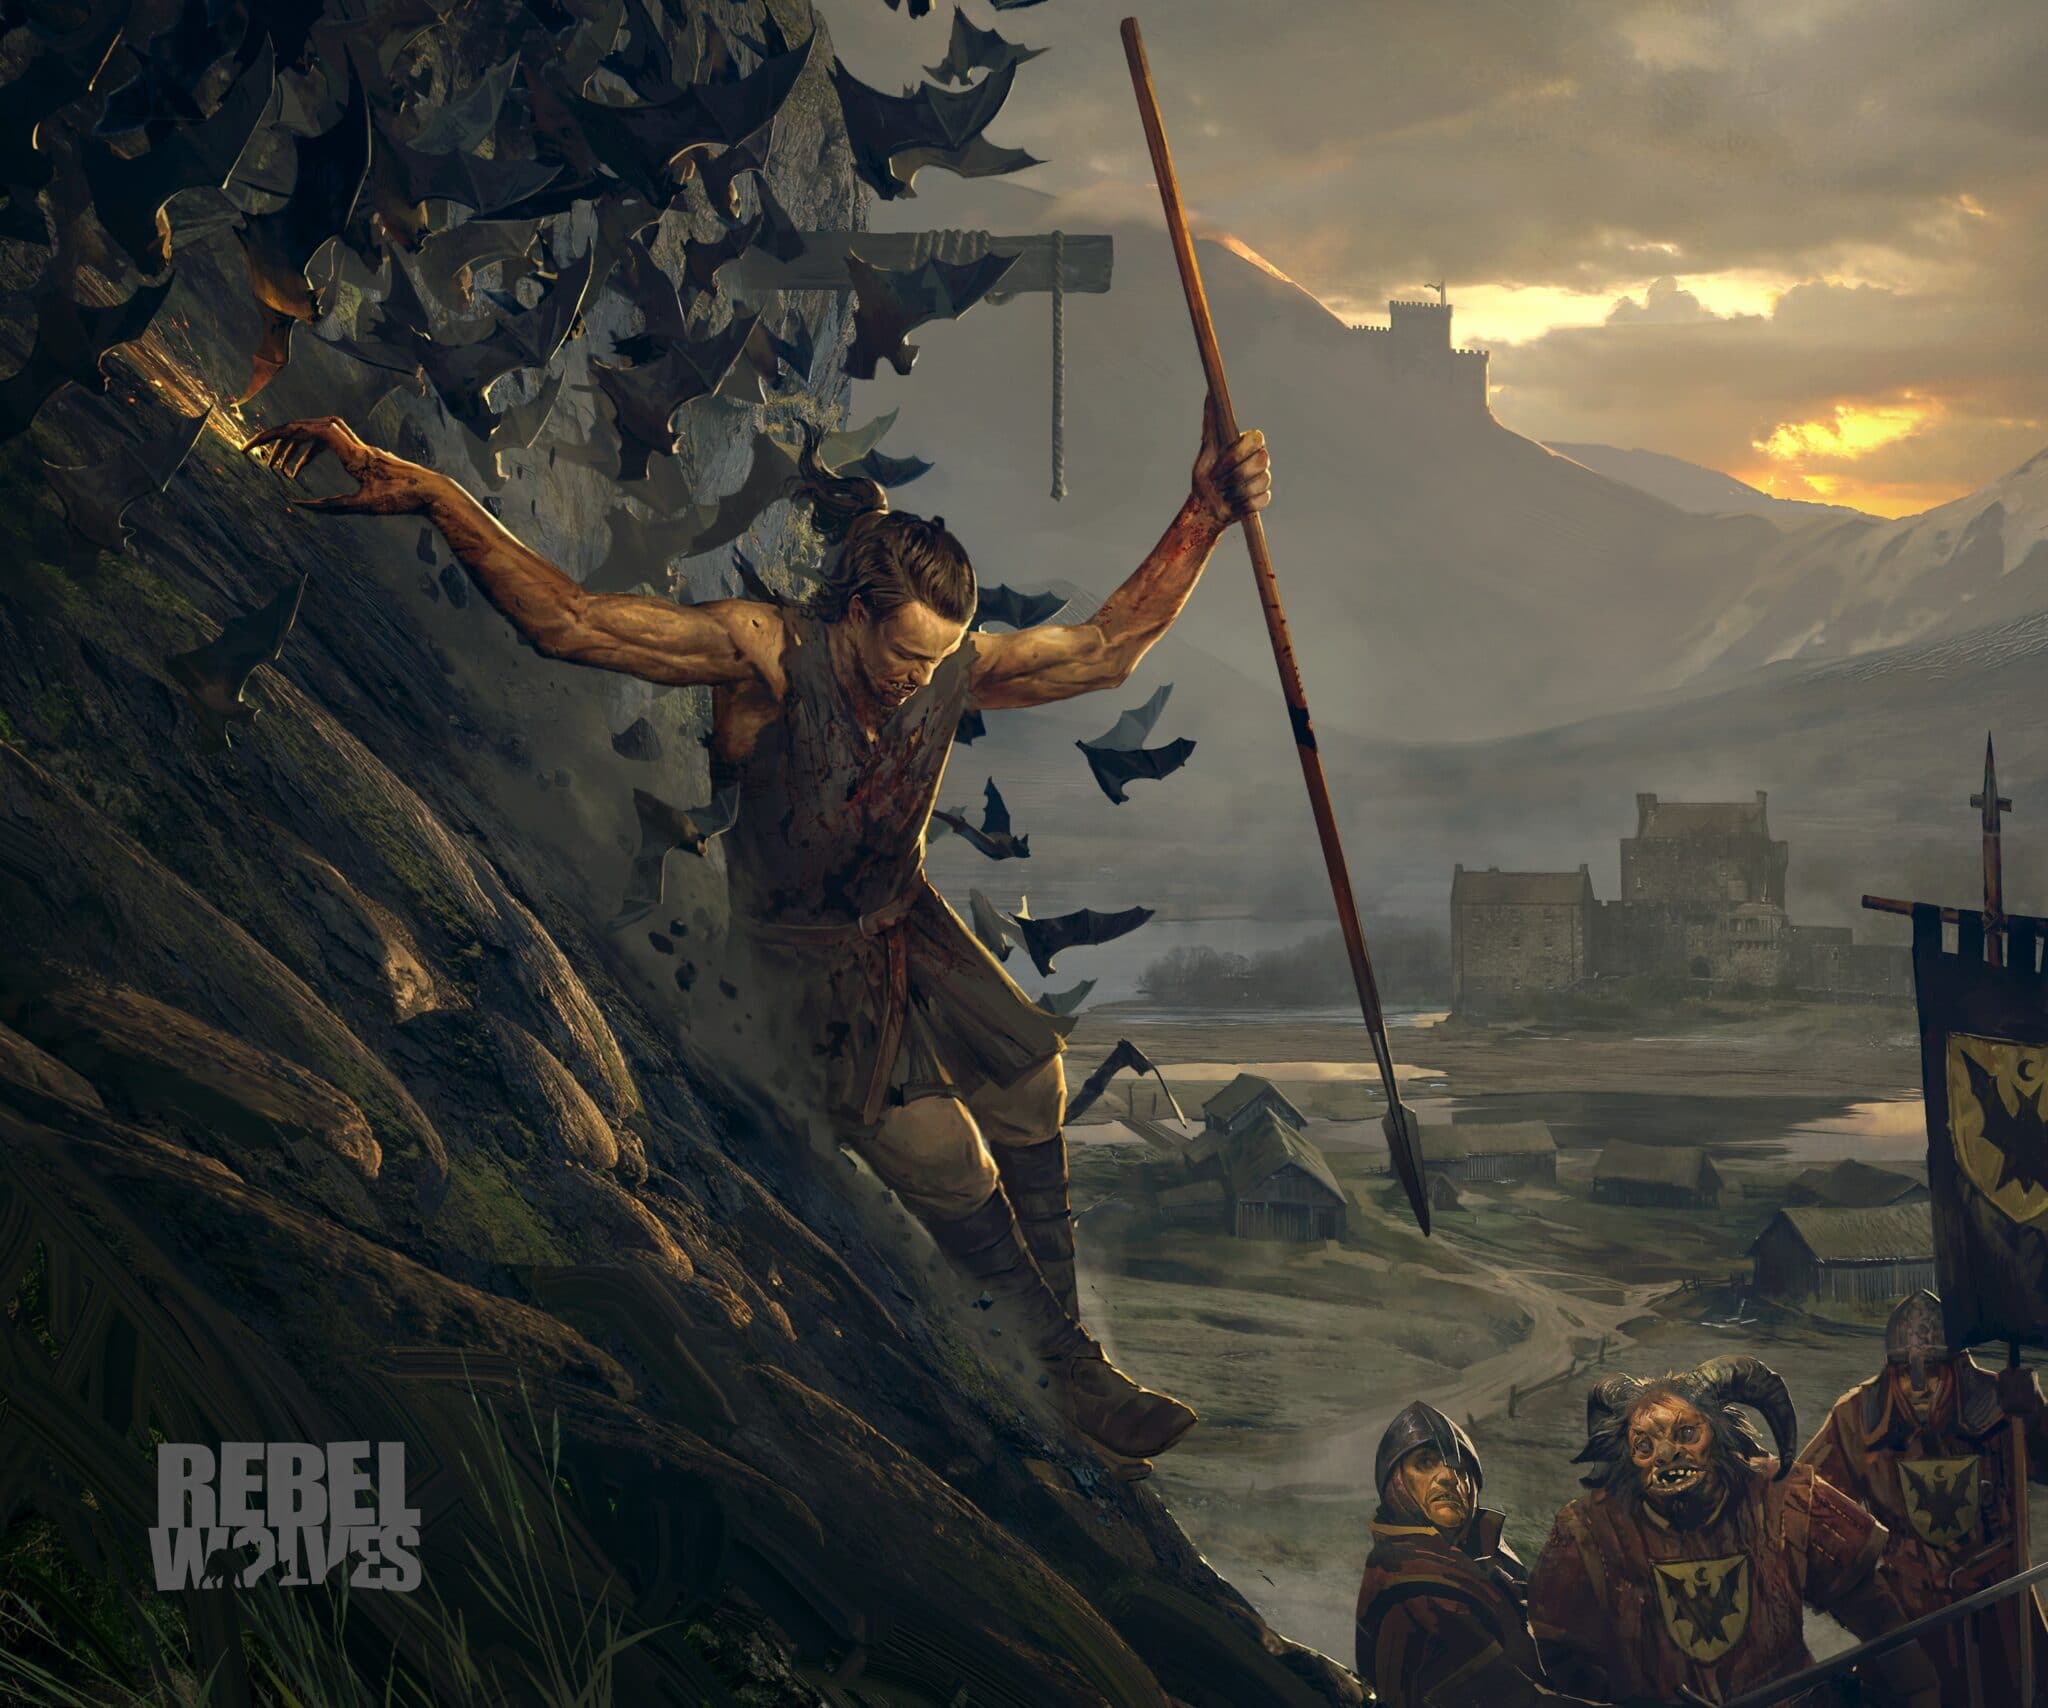 Jak na razie, wszystko co możemy zobaczyć to concept art nowej gry. Wskazuje na mroczną scenerię fantasy i wojnę.